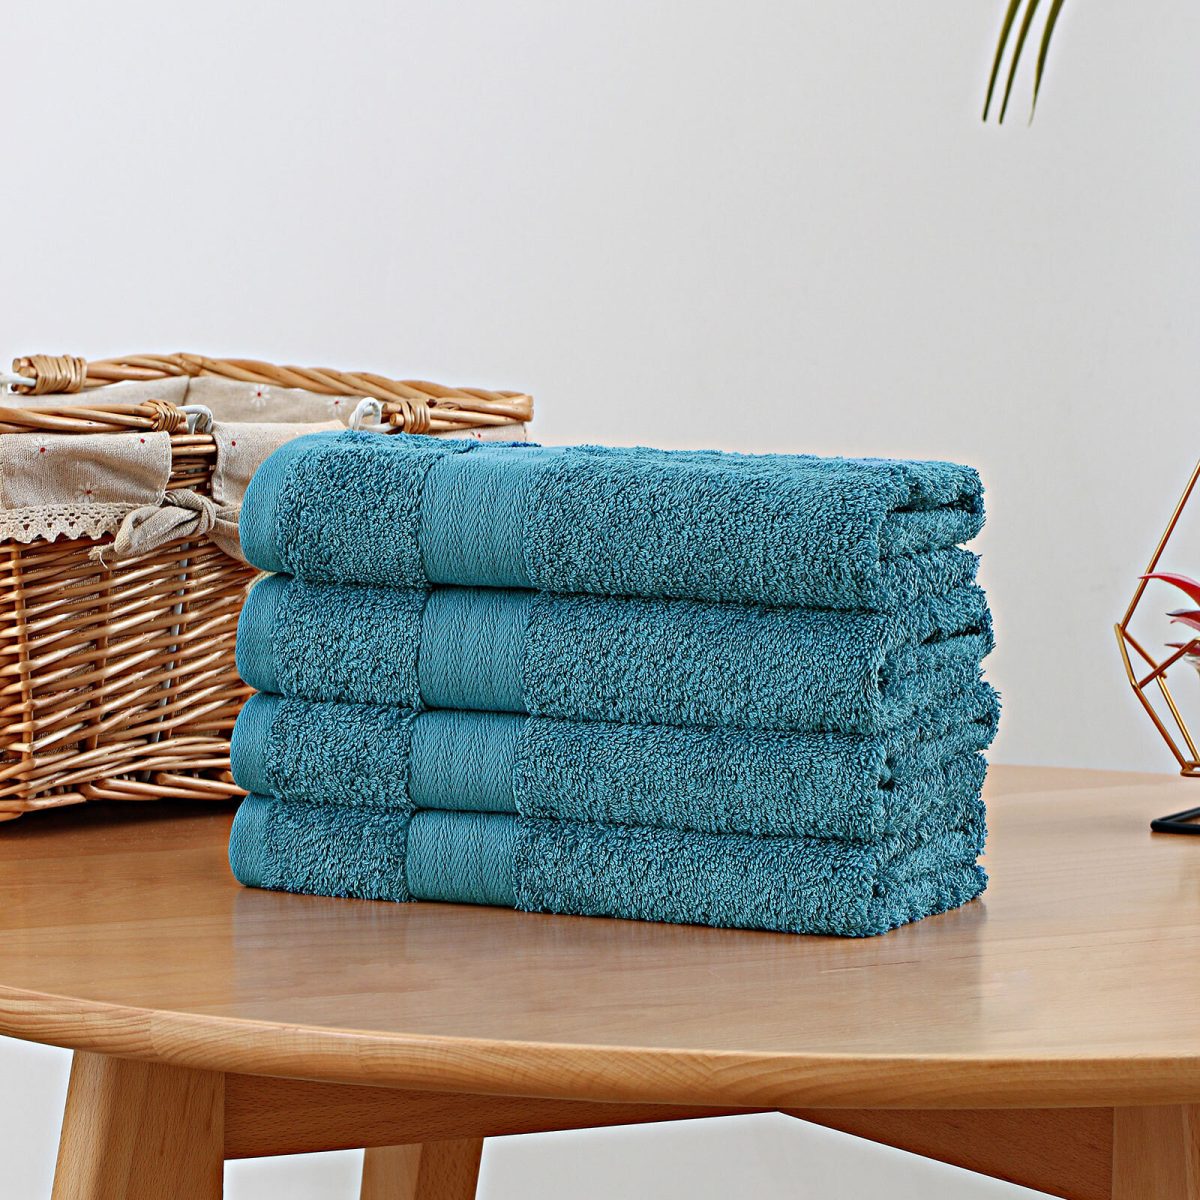 Bath Towel 4 Piece Cotton Hand Towels Set – Blue